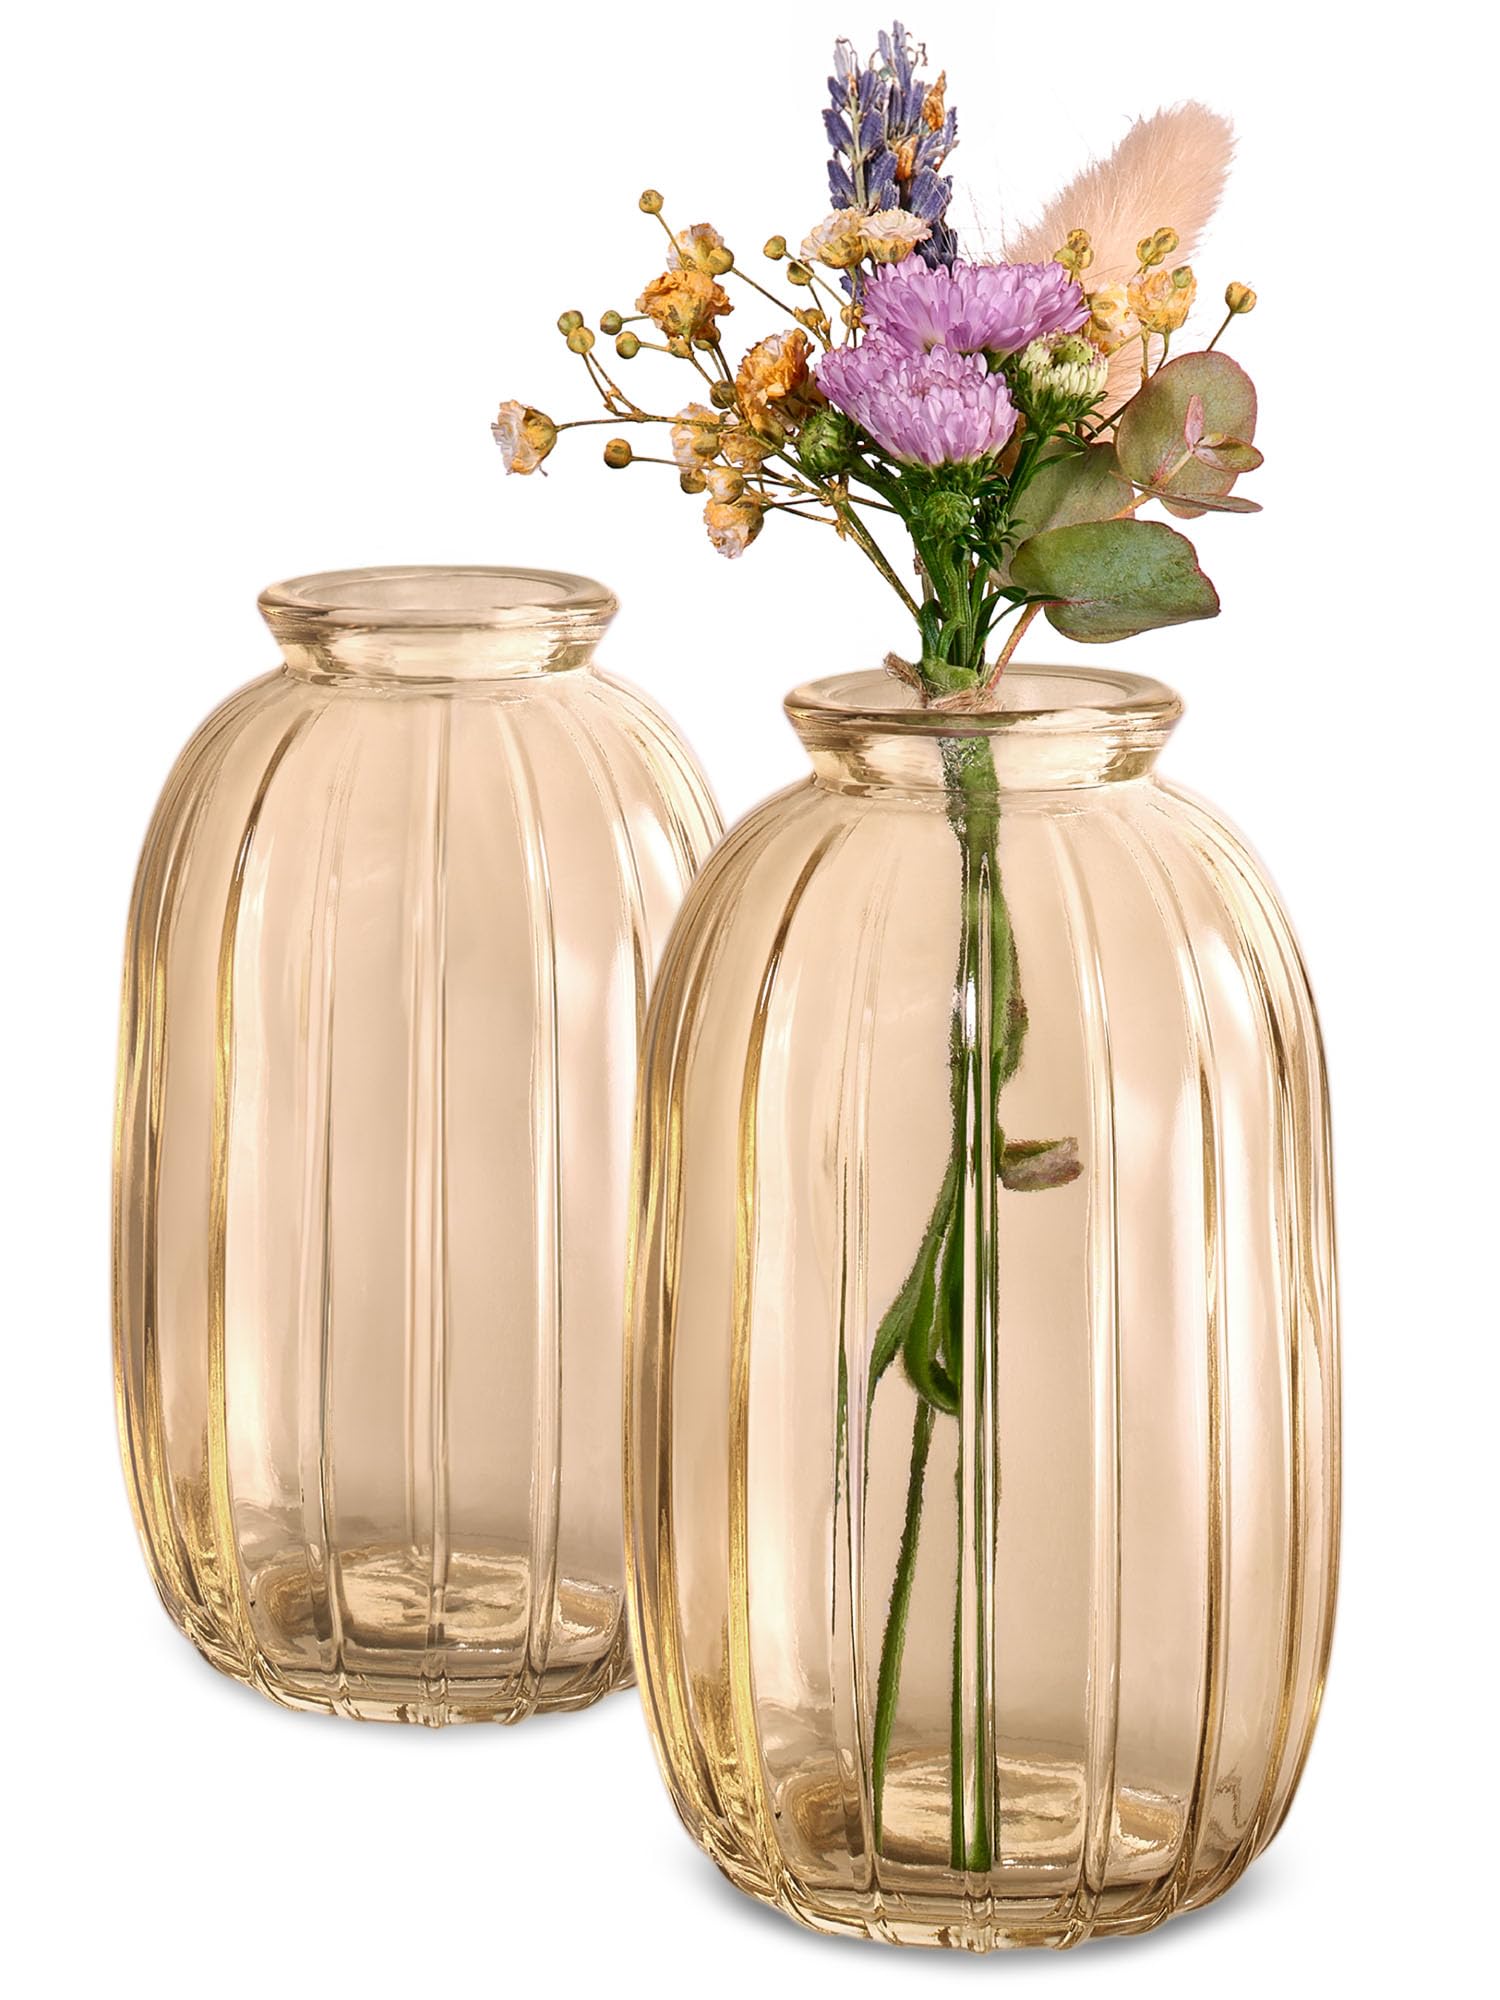 Kleine Glasvasen - 12er Set - Vintage Stil - Runde & Stabile Blumenvasen - Spülmaschinenfest - Perfekt für Hochzeit Tischdeko - Gold